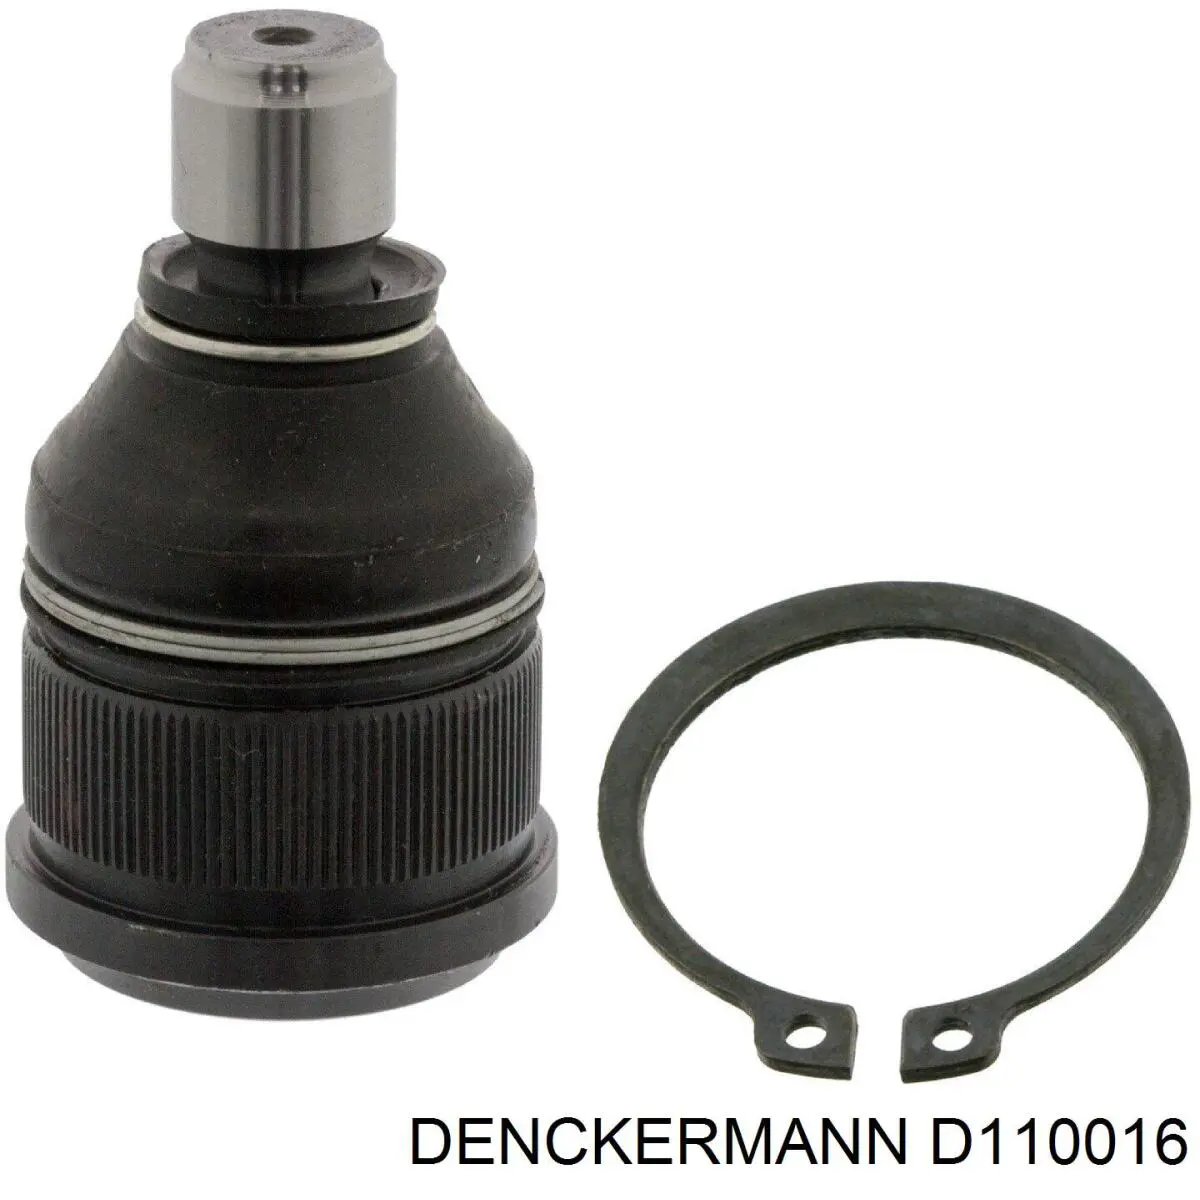 D110016 Denckermann rótula de suspensión inferior